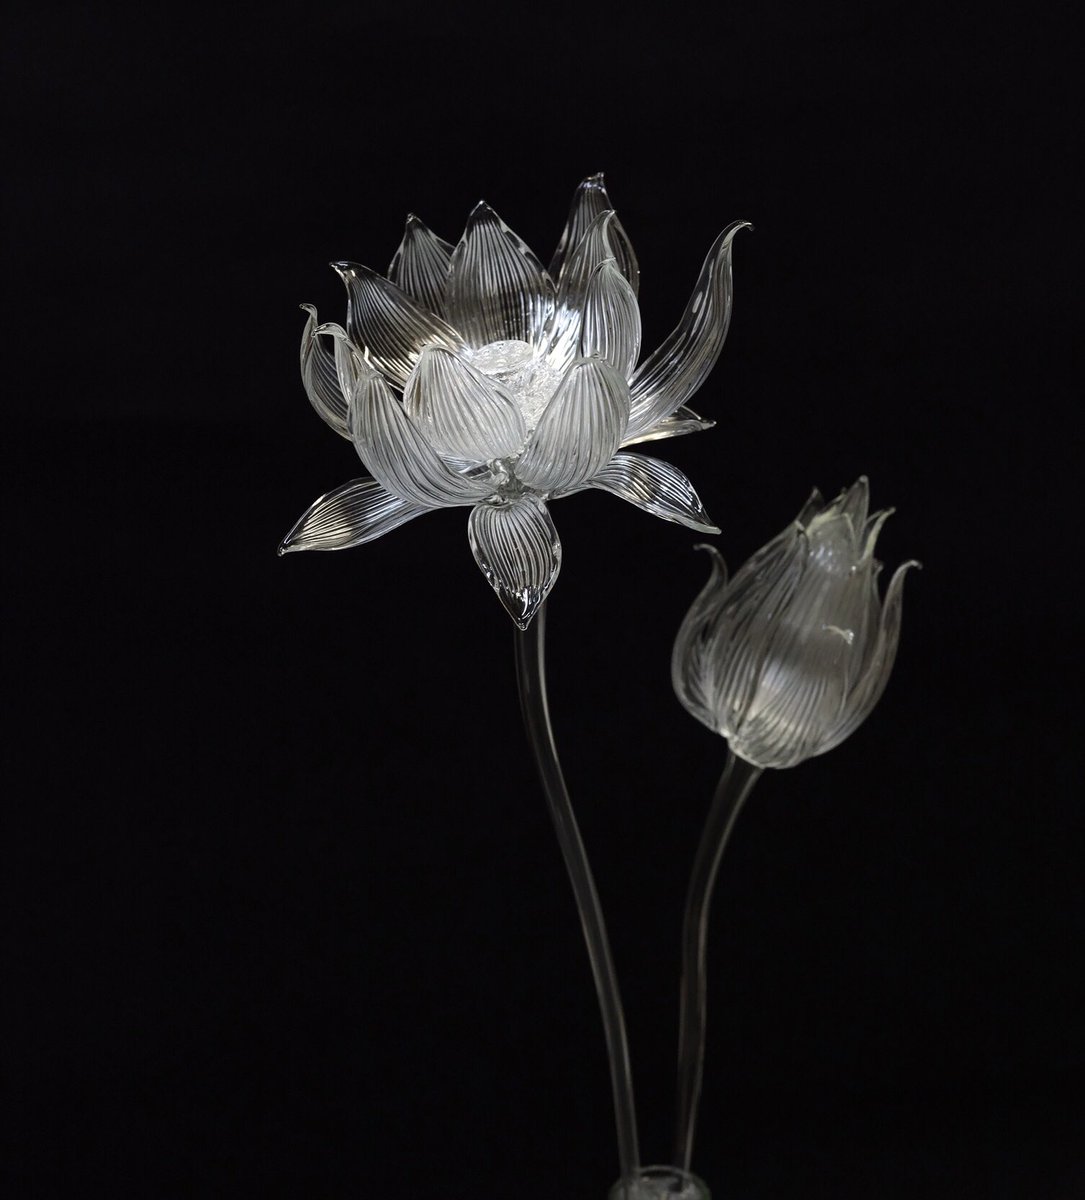 Utsusemi Glass Sculpture 在 Twitter 上 梅雨といえば蓮の花作るよ 静かな佇まいになるように生けて 頭が重いので何度か炎で茎を曲げてようやく安定 夏真っ盛りなので涼やかな感じになり これで蓮の花は終了 蓮のはな ハス ランプワーク Borosilicate